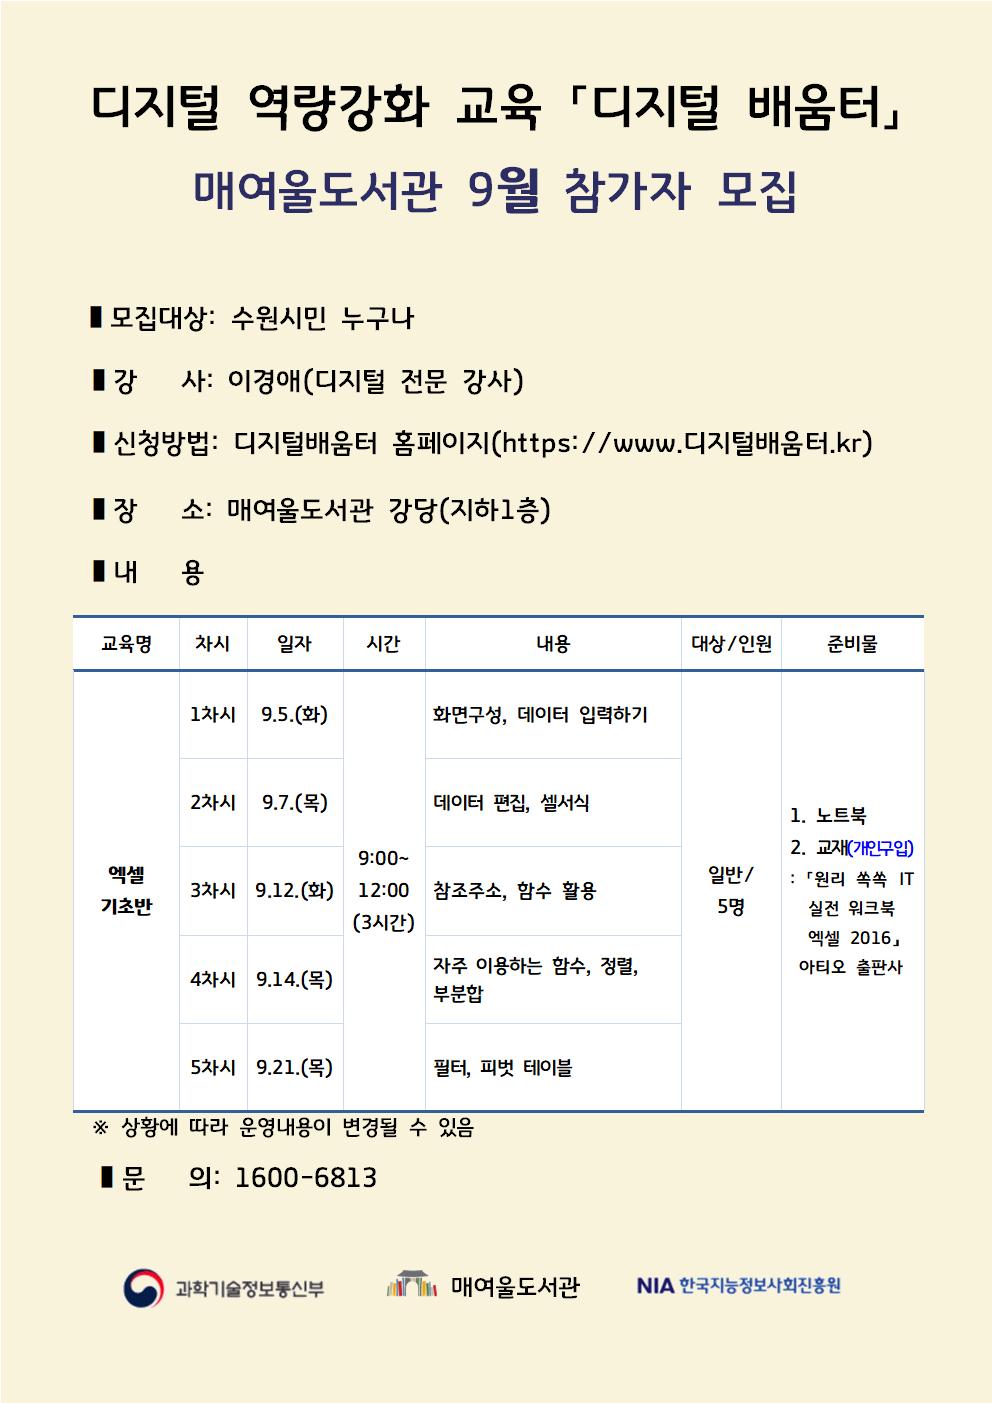 매여울도서관디지털역량강화교육참가자모집홍보문(9월).jpg